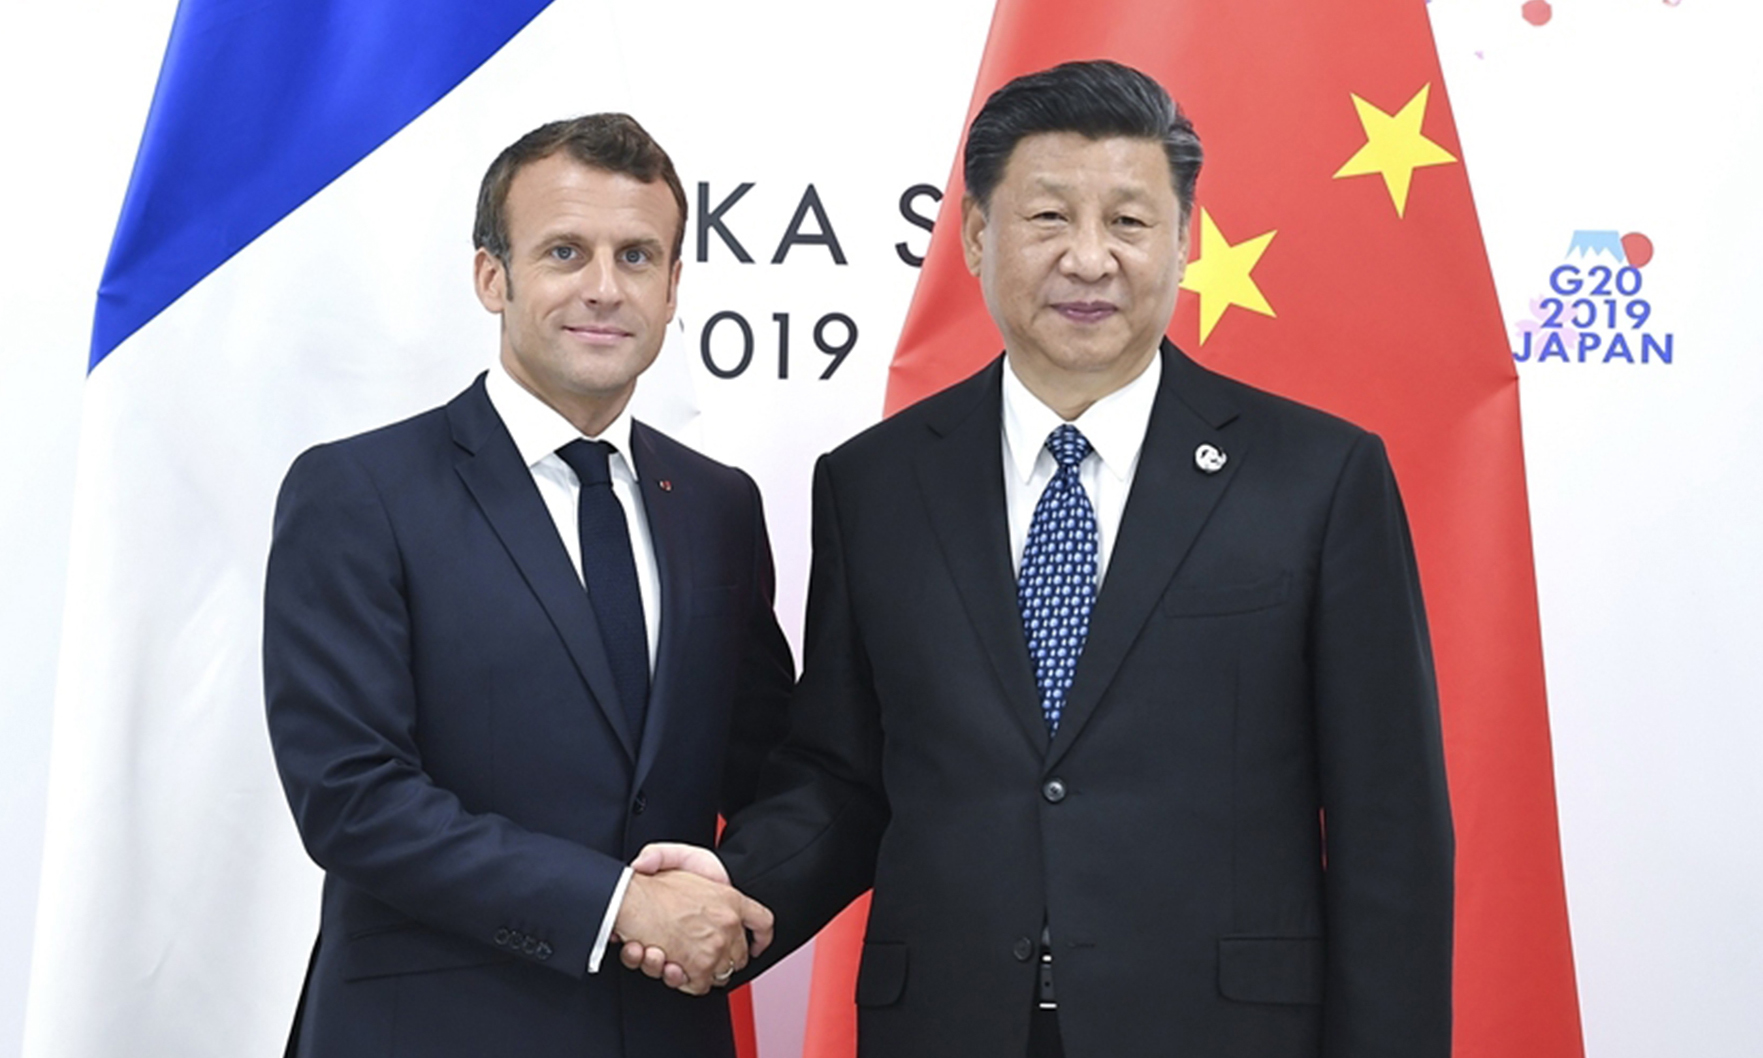 Tổng thống Pháp Emmanuel Macron (trái) bắt tay Chủ tịch Trung Quốc Tập Cận Bình tại hội nghị G20 ở Osaka, Nhật Bản, hồi tháng 6/2019. Ảnh: Xinhua.